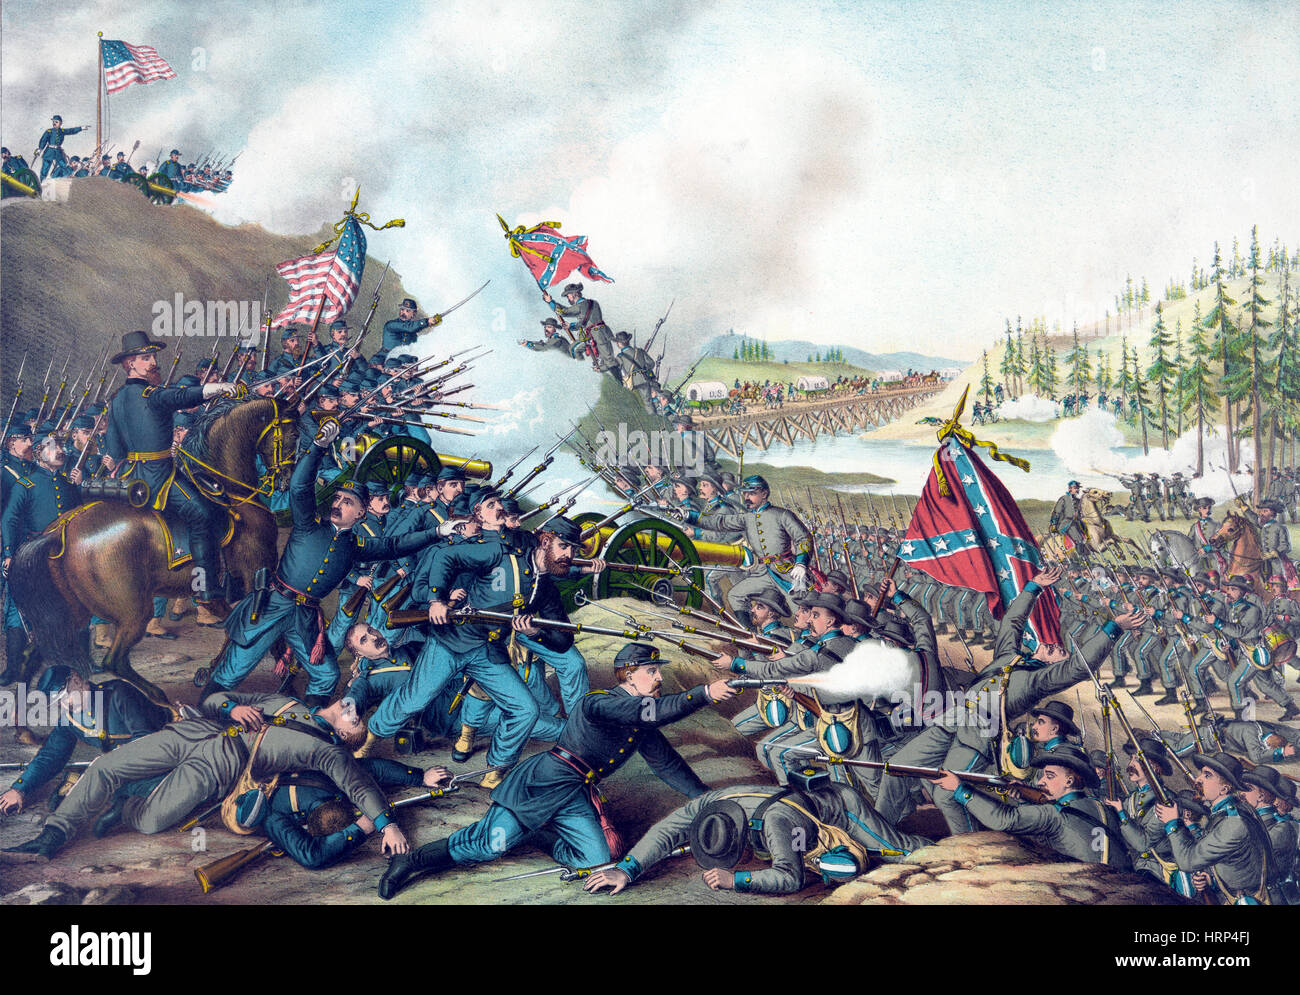 La Guerra Civil Americana, la batalla de Franklin, 1864 Foto de stock